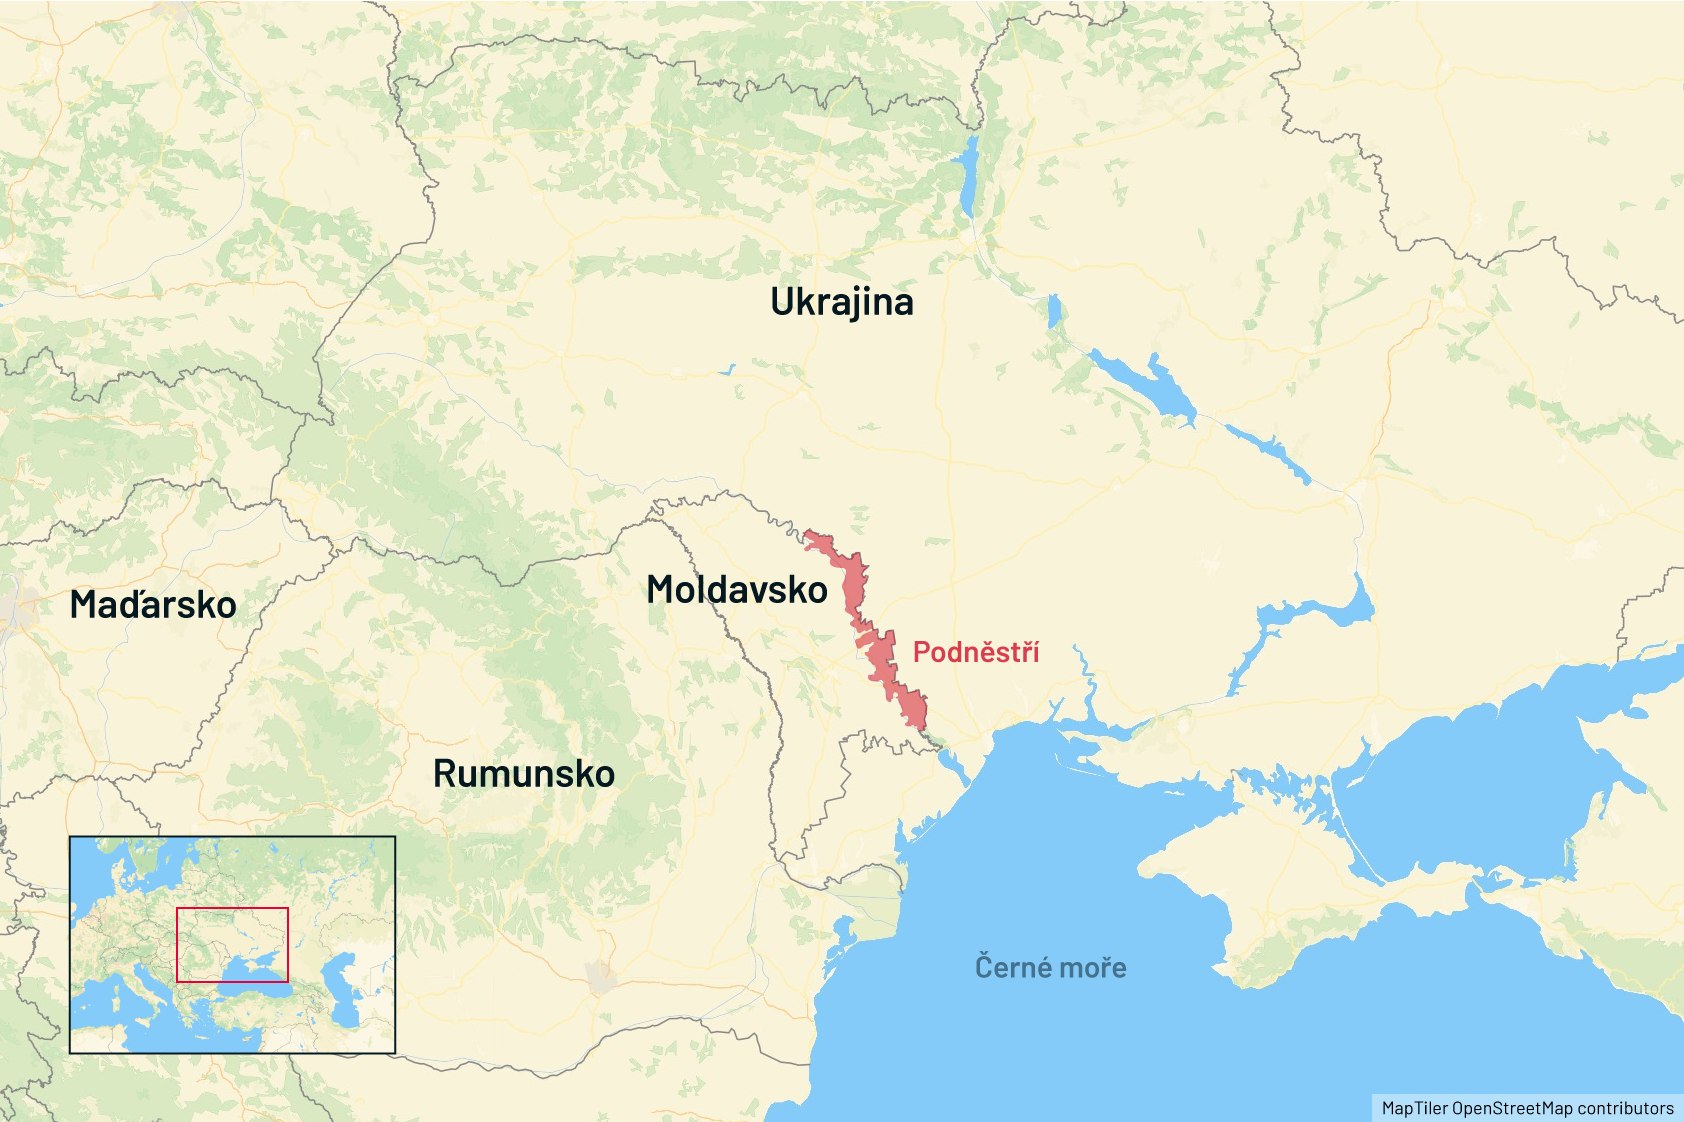 Mapa - Maďarsko, Ukrajina, Rumunsko, Moldavsko, Podněstří